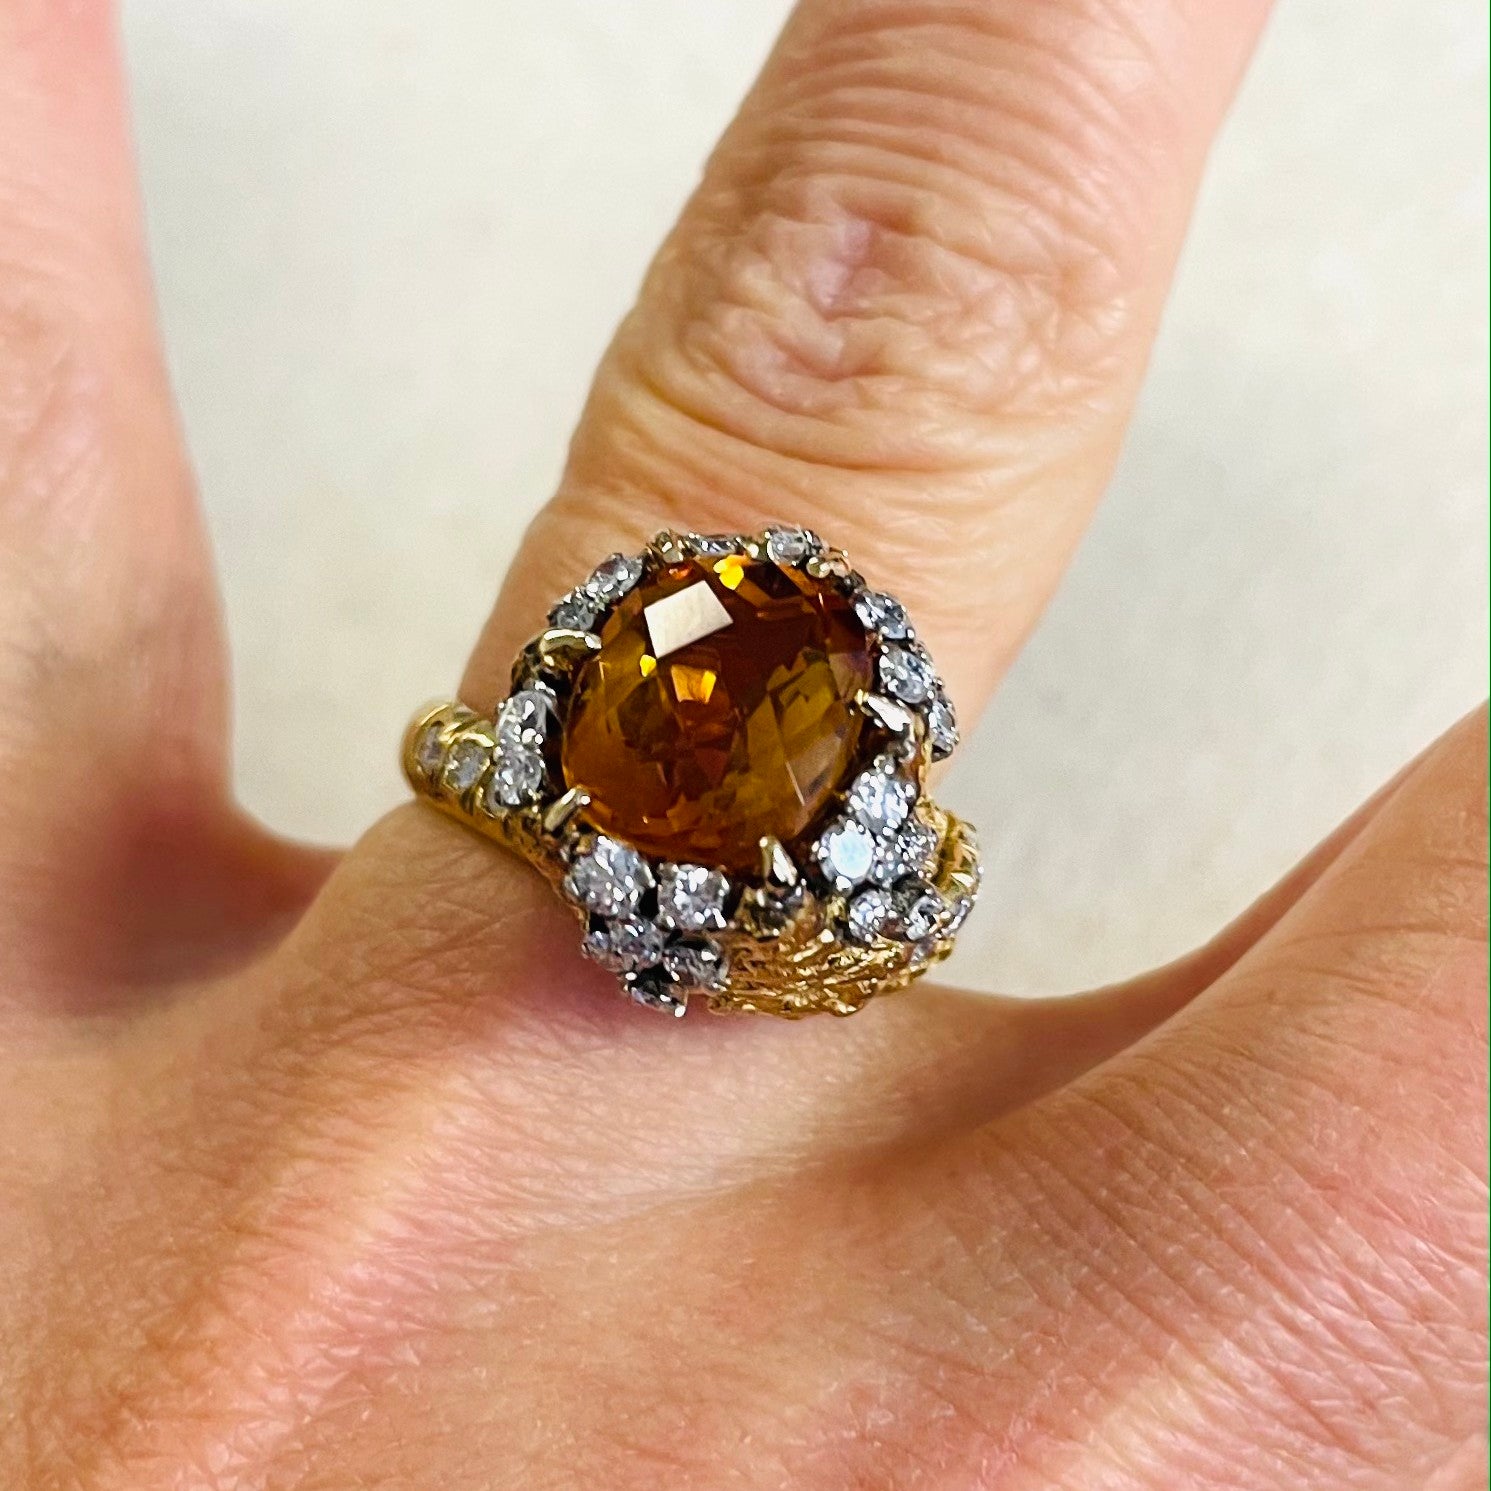 1960s 14KT Yellow Gold Citrine & Diamond Ring on finger